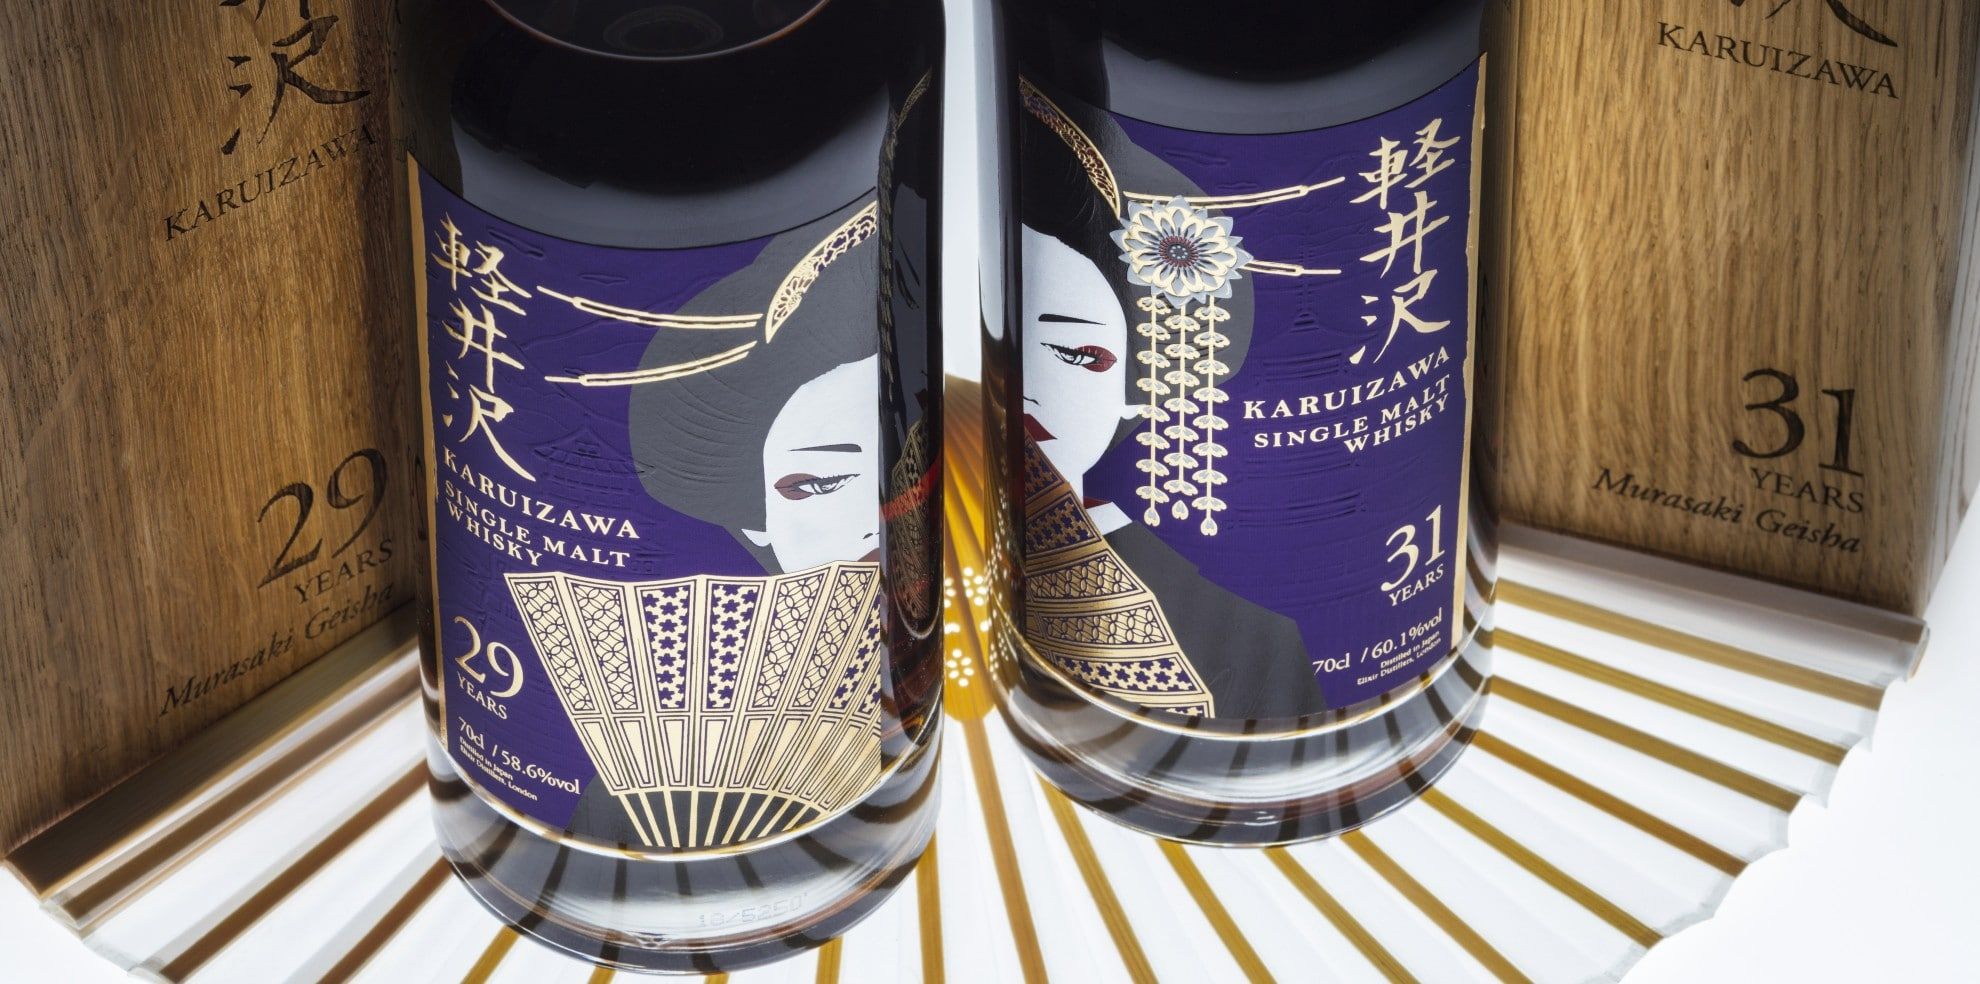 These Karuizawa Murasaki Geisha whiskies are some of the world’s rarest